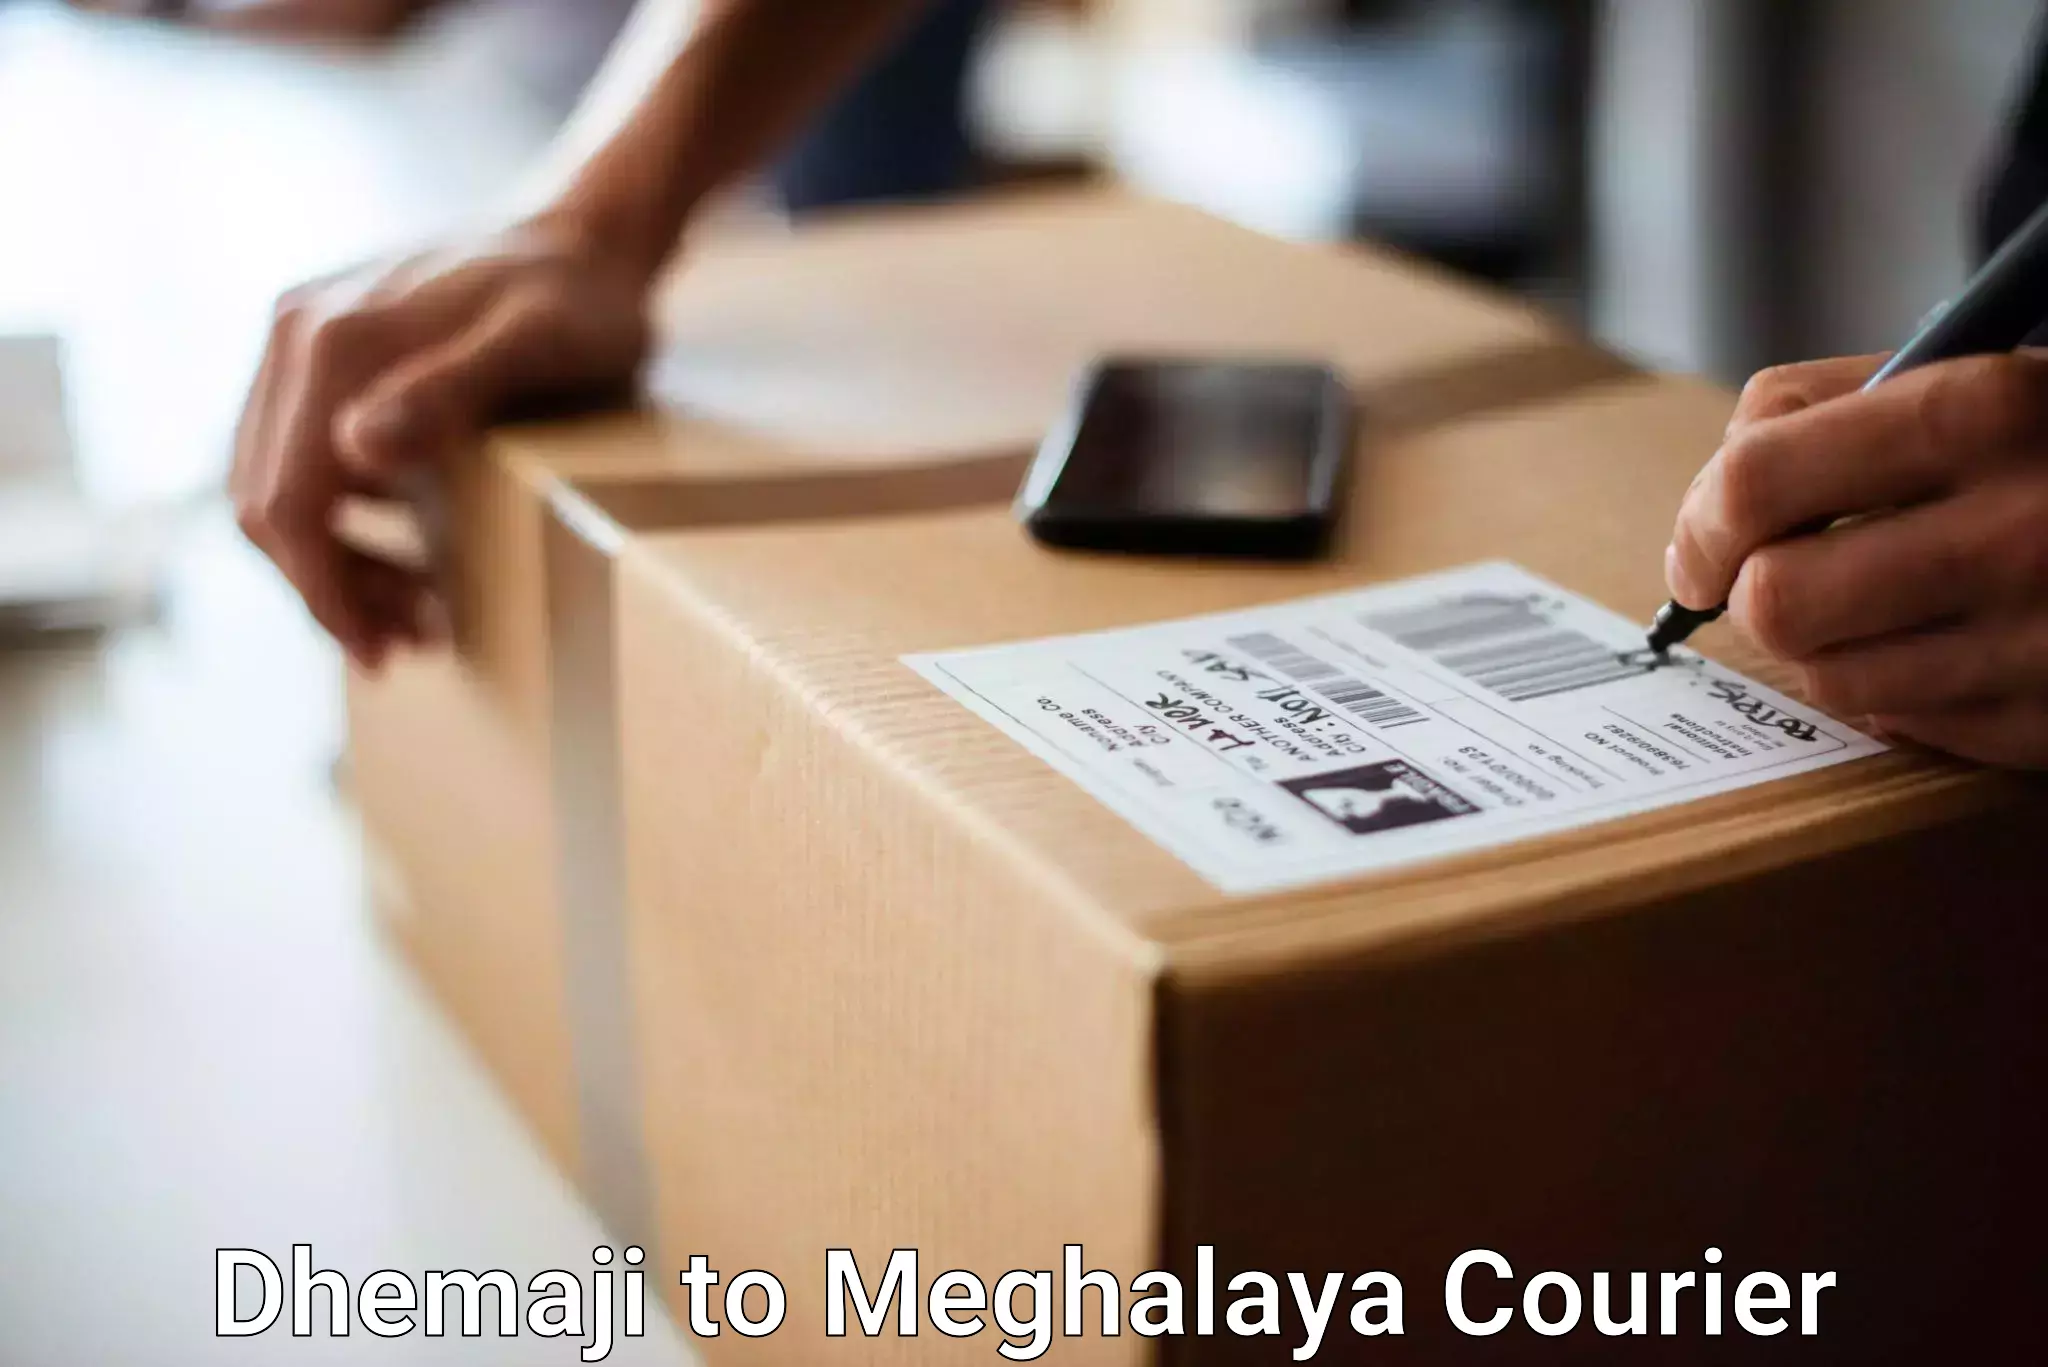 Baggage transport estimate Dhemaji to Meghalaya